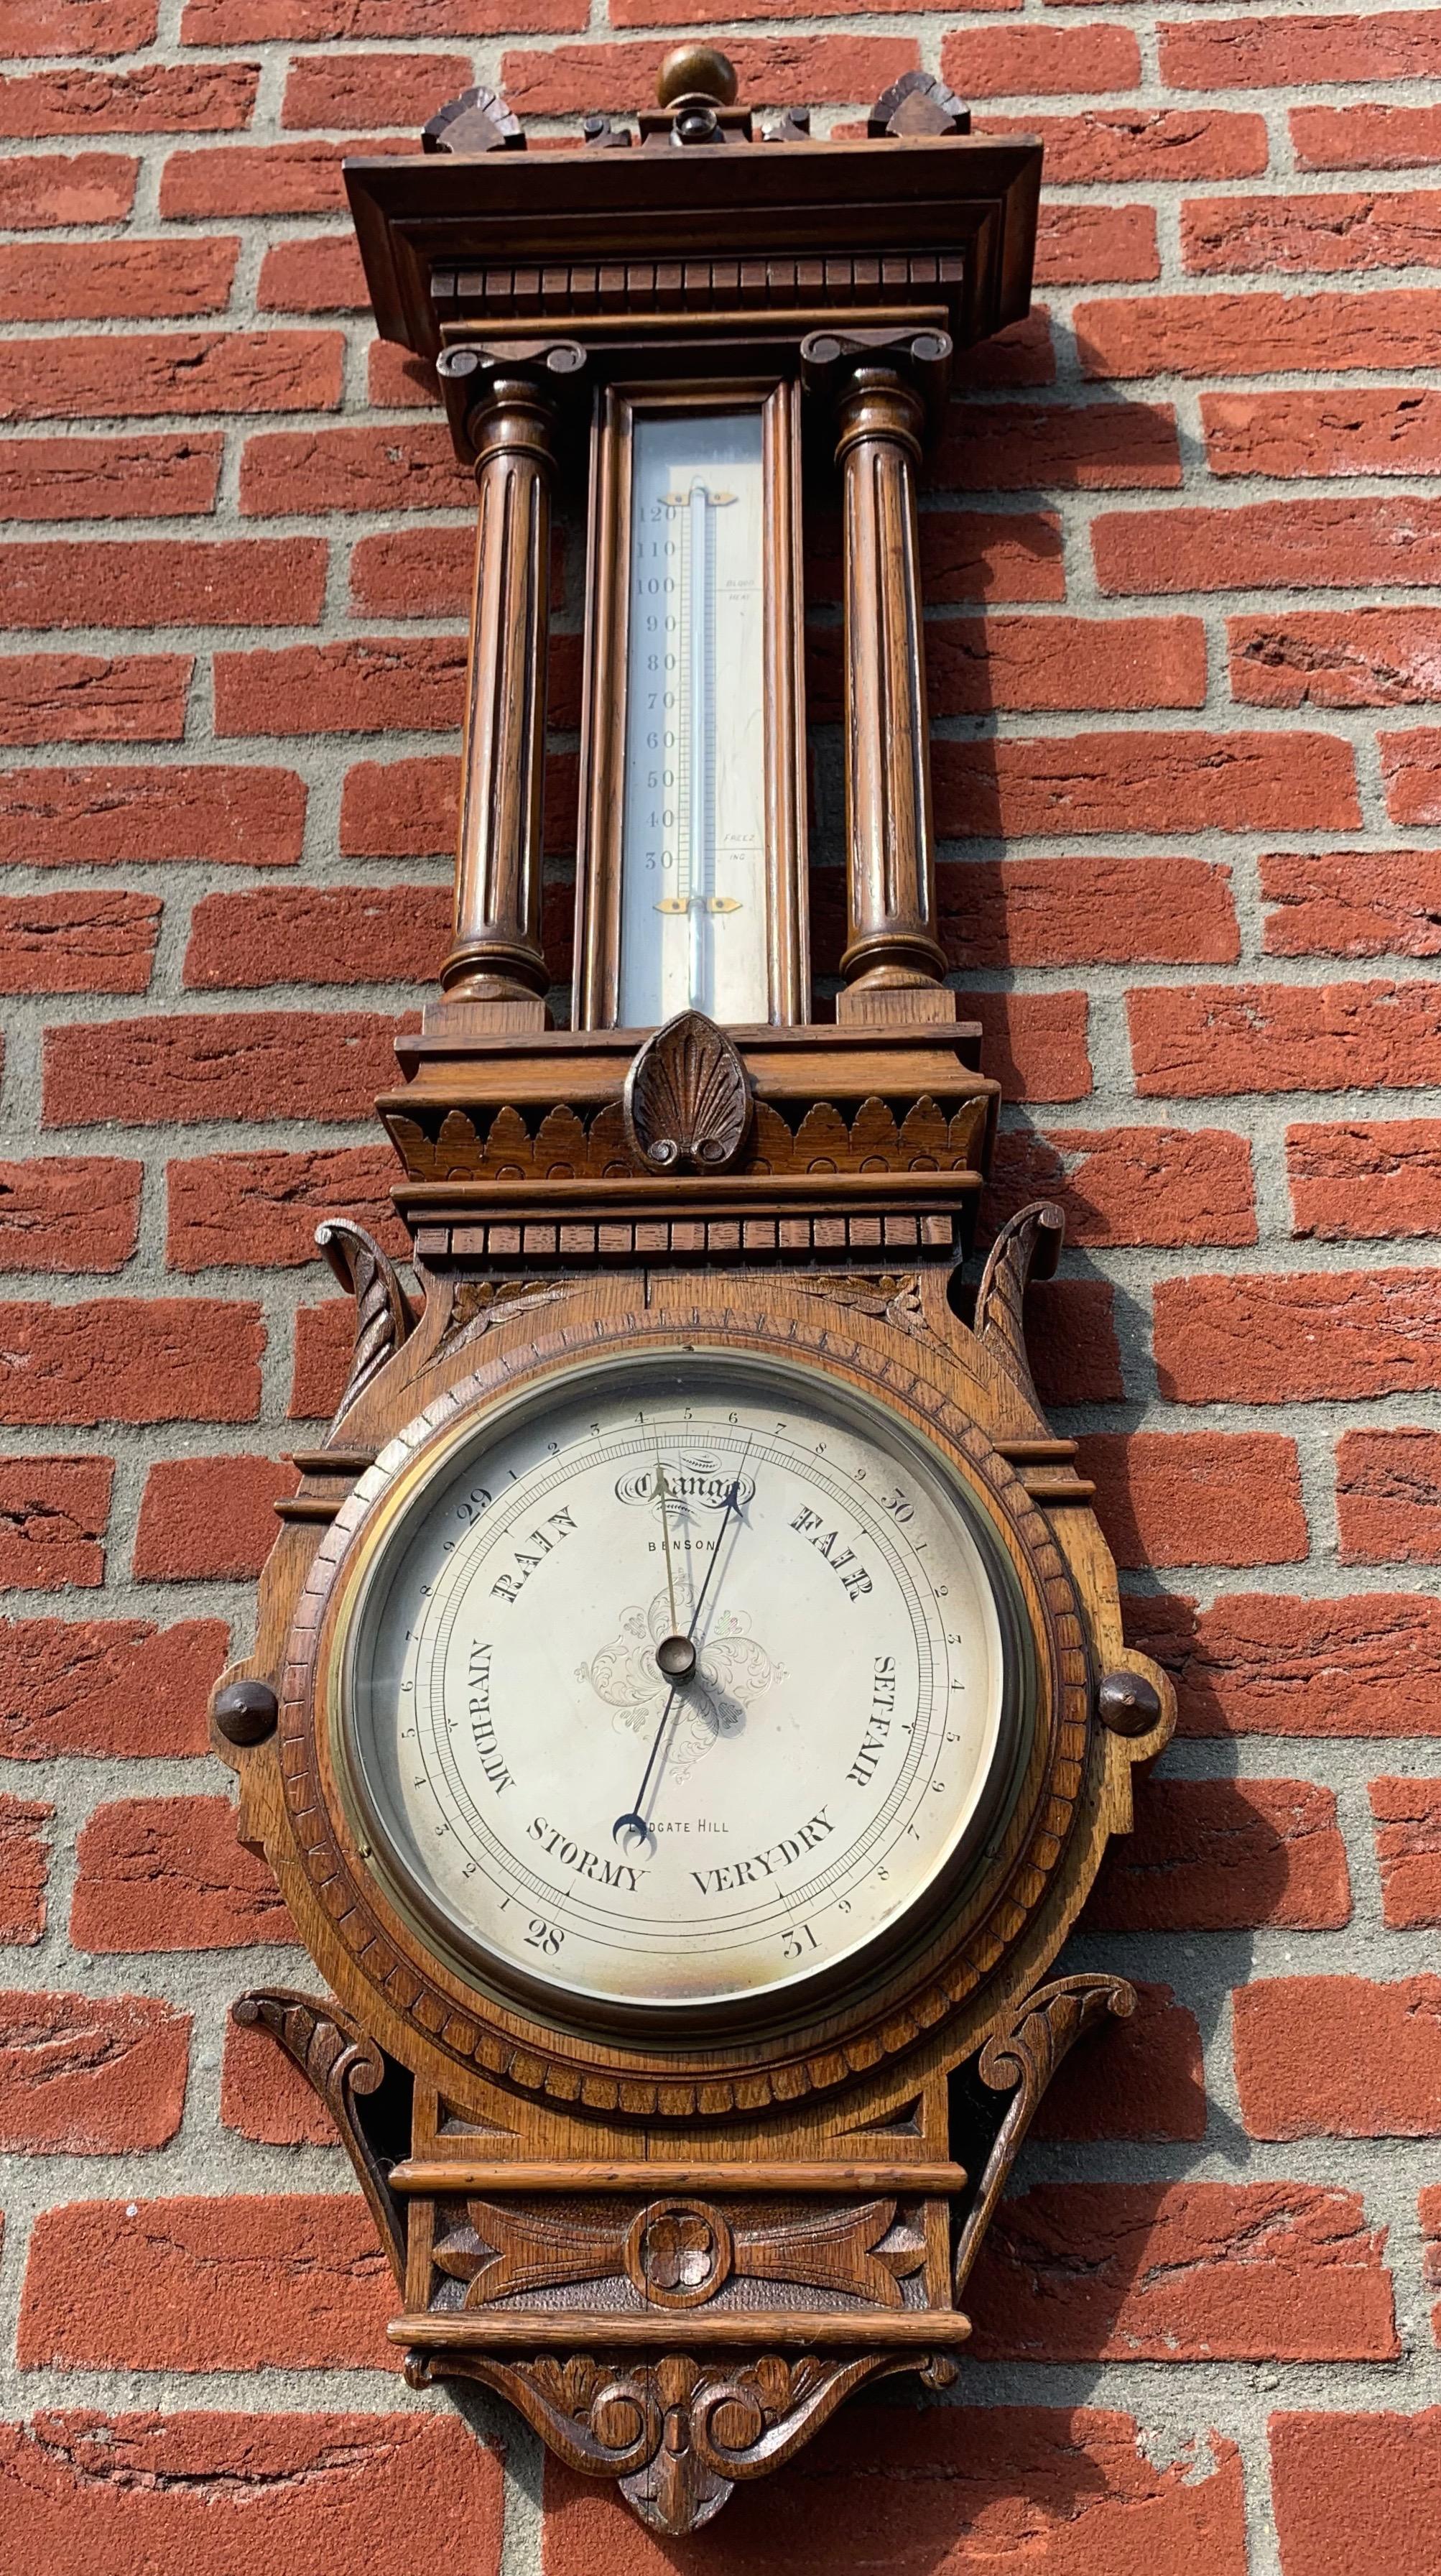 Wunderschönes Design und hochwertige Ausführung des antiken Barometers.

Dieses Wandbarometer aus englischer Produktion vom Ende des 19. bis Anfang des 20. Jahrhunderts hat alles, was eine Antiquität ausmacht. Zunächst einmal ist die Qualität der